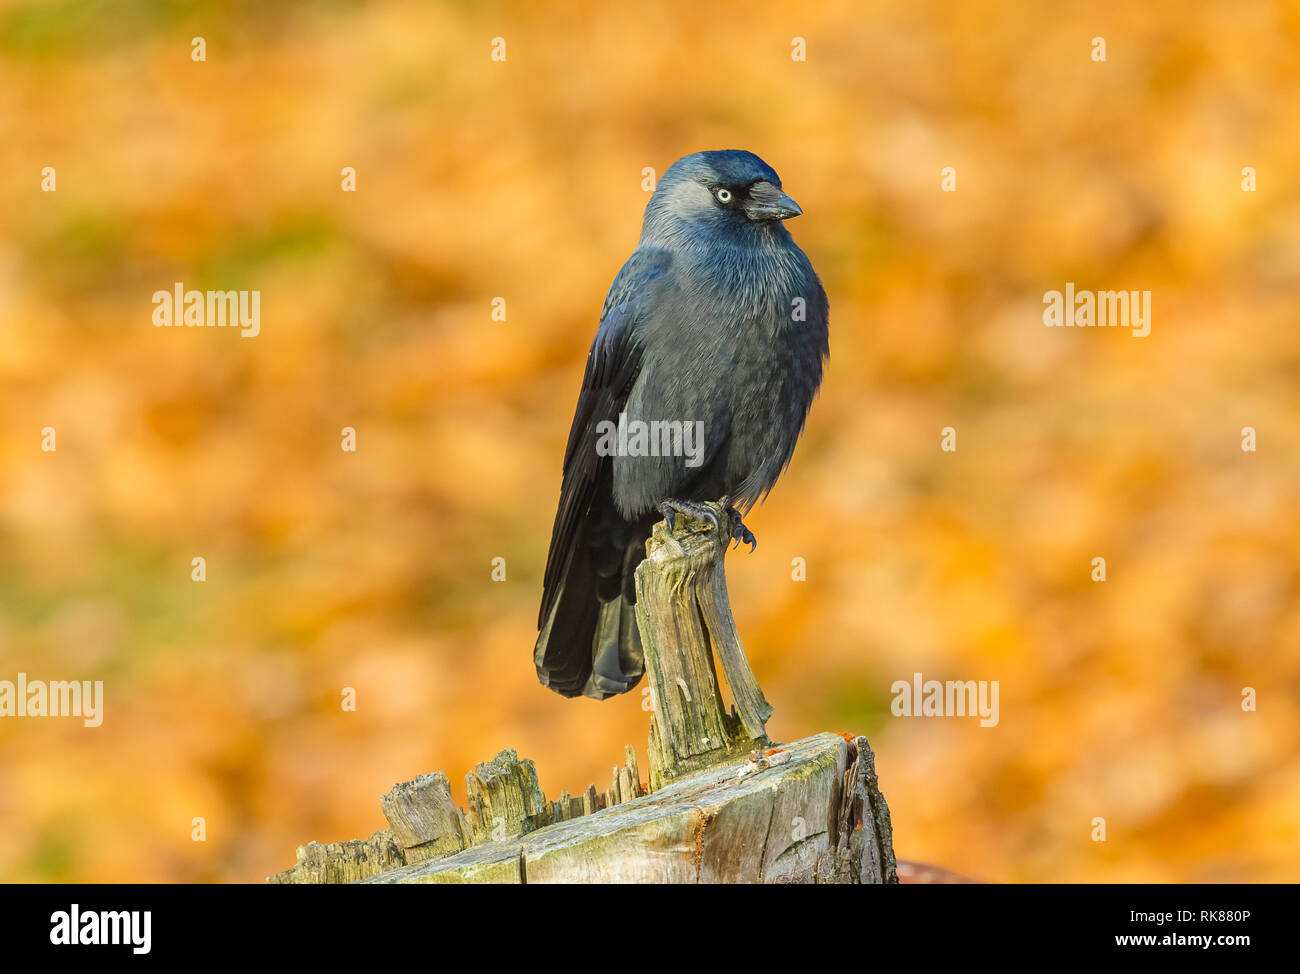 Dohle (Corvus monedula) mit schönen blauen Gefieder und grauen Nacken, an einem frostigen Morgen im natürlichen Lebensraum Wald. Nach rechts. Landschaft. Stockfoto